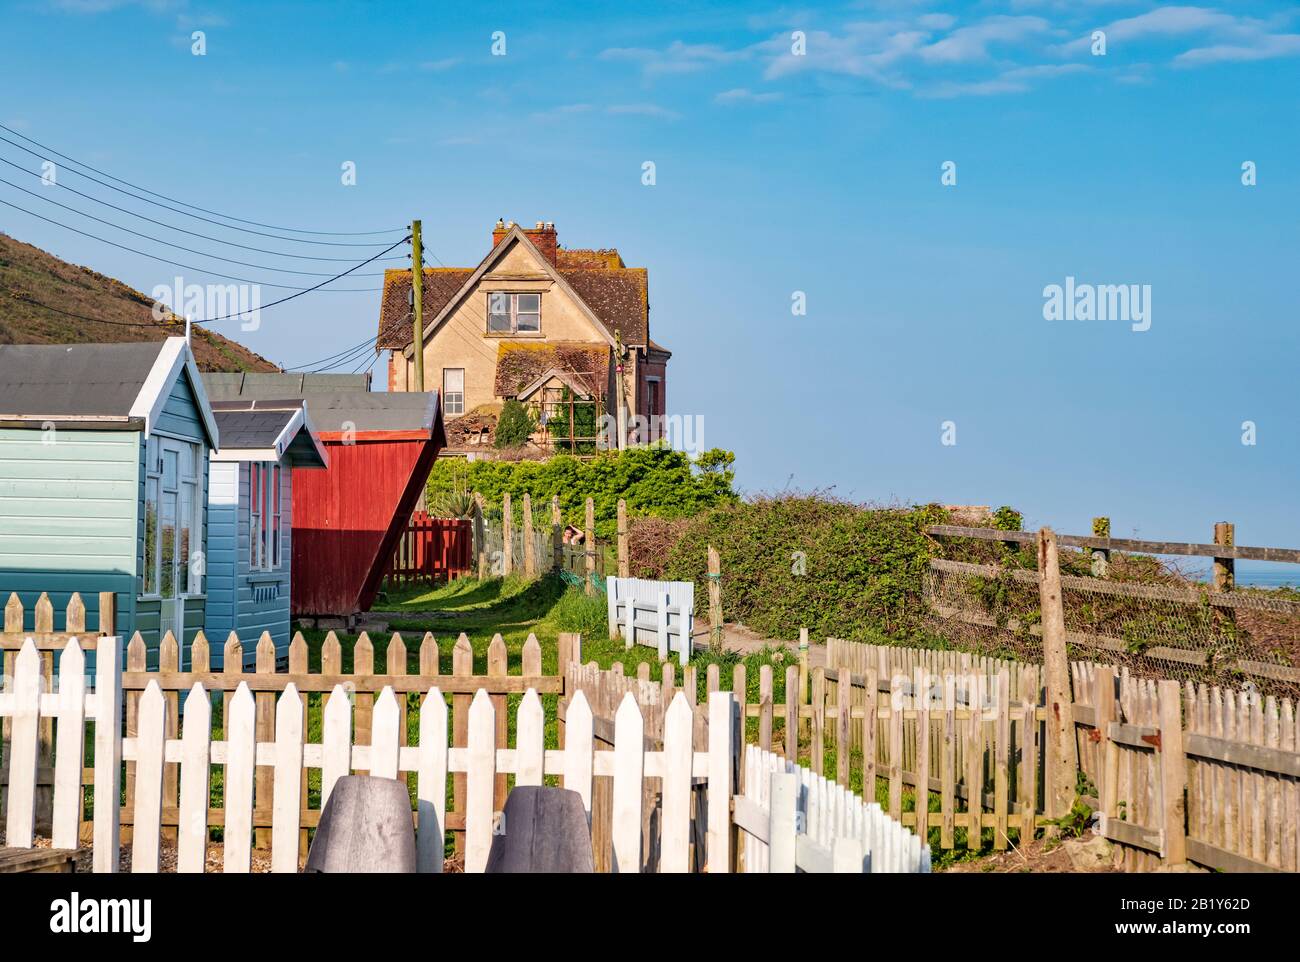 Bunte Strandhütten an der Promenade in Westward Ho!, neben Meer und Strand, Urlaubsziel, Eimer und Spaten Urlaub, Küstenleben, Norden Stockfoto